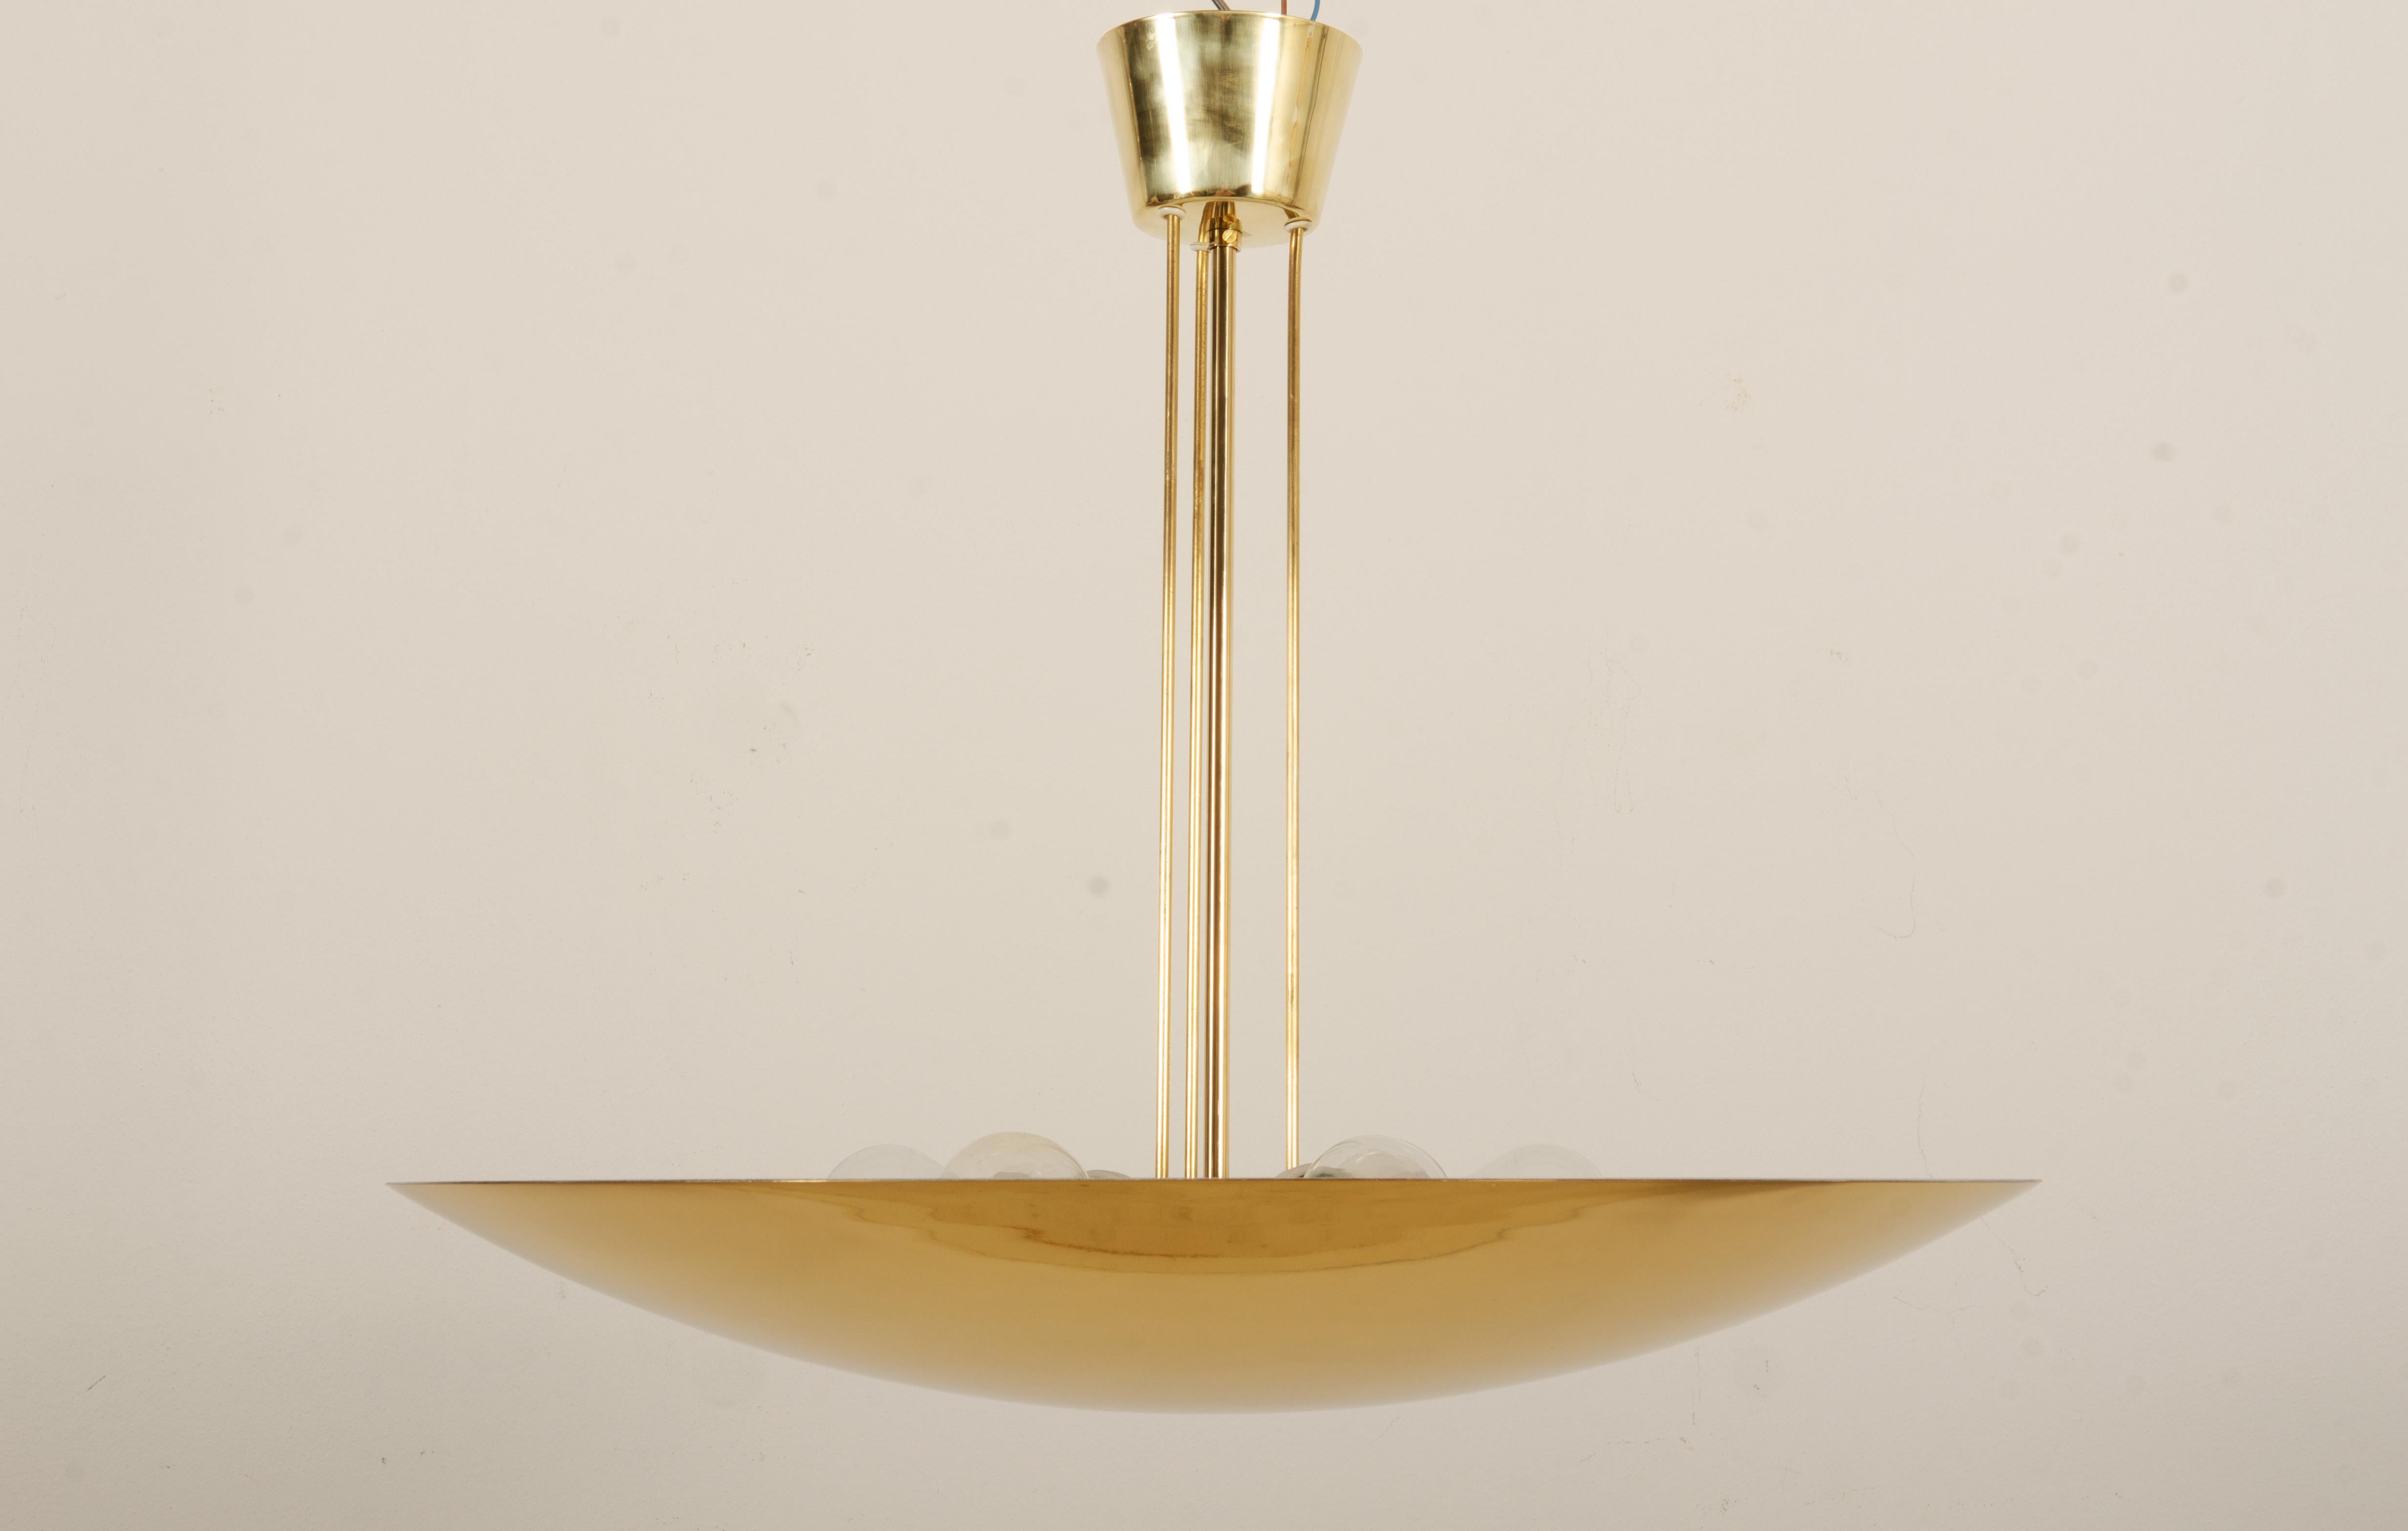 Kuppellampe aus Messing von J.T. Kalmar aus den 1970er Jahren. Ausgestattet mit sechs E27-Polzellanfassungen und jeweils bis zu 100 Watt. Hervorragender Zustand, neu poliert.
bis zu 2 Stück erhältlich, Preis pro Lampe